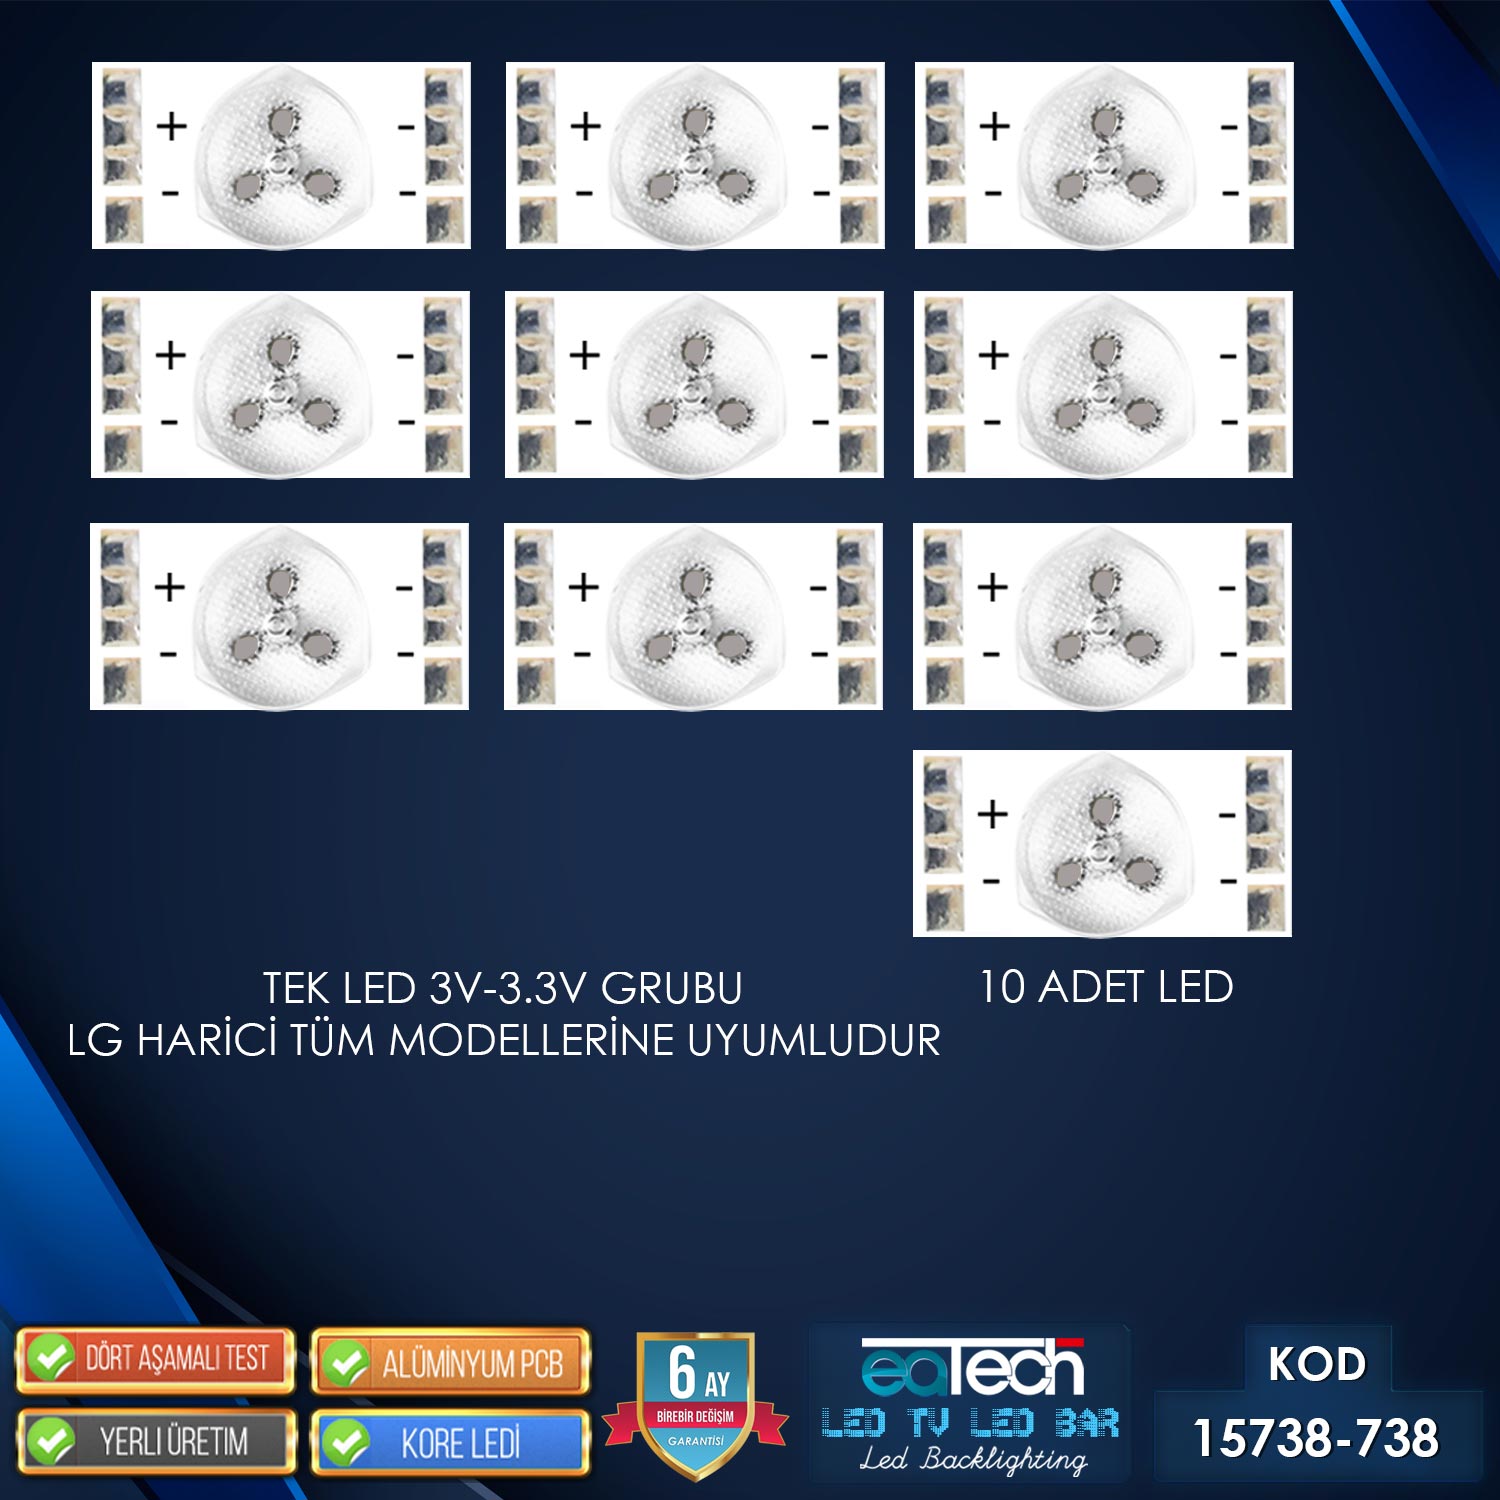 KOD-738 TEKLİ TV LED 3V (LG HARİCİ TÜM MODELLER) (10 ADET)